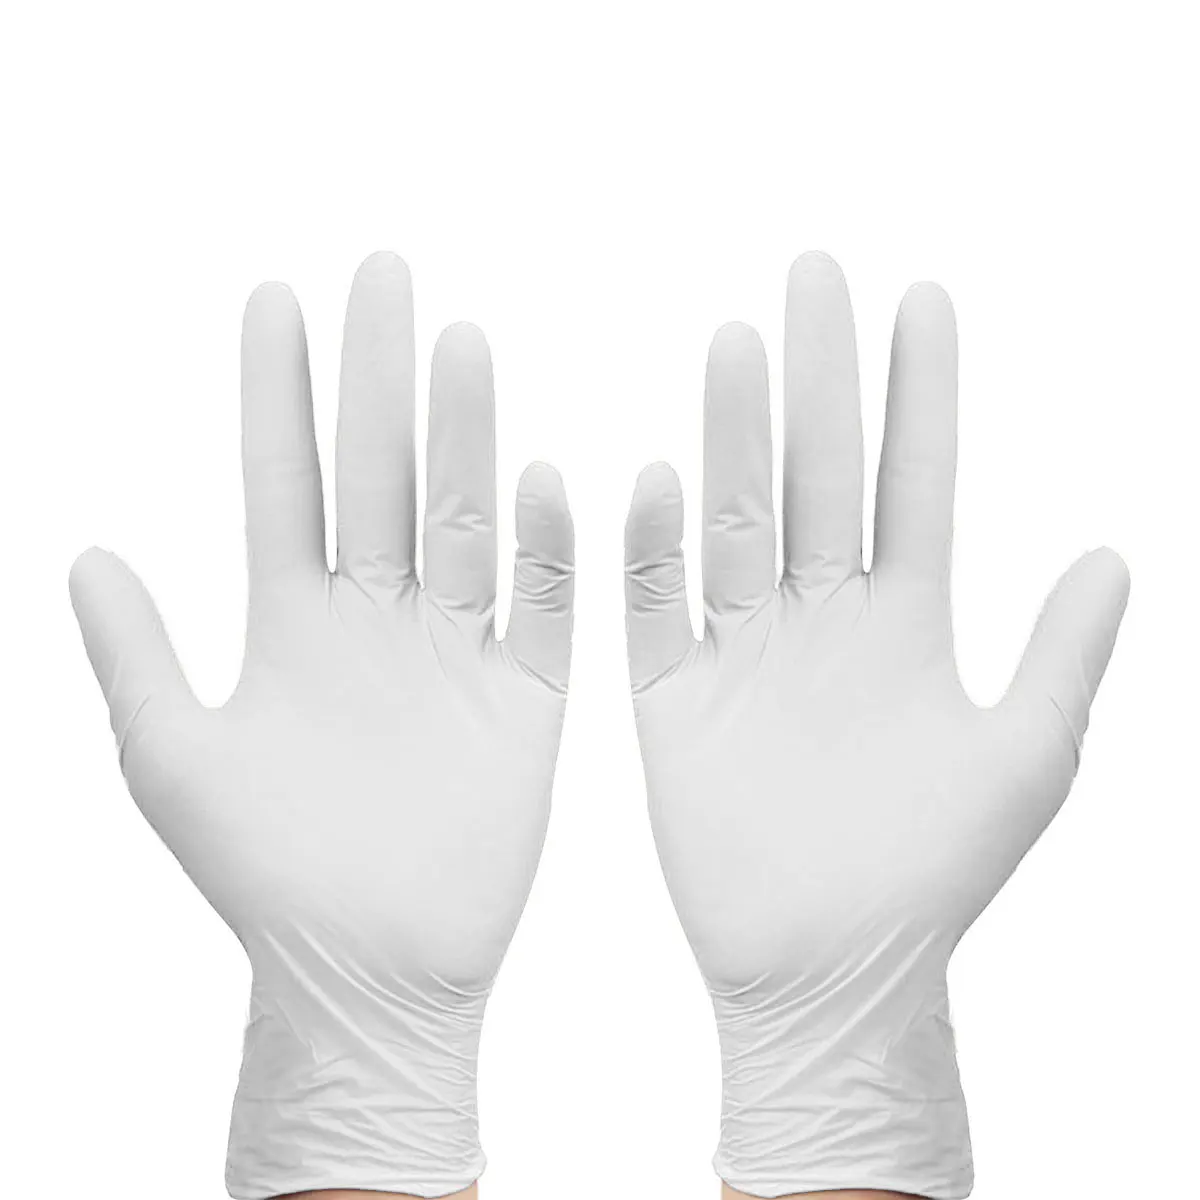 100 шт одноразовые перчатки нитриловые пищевые Перчатки универсальные рукавицы хозяйственные перчатки для уборки для медицинской косметики стоматология аптека